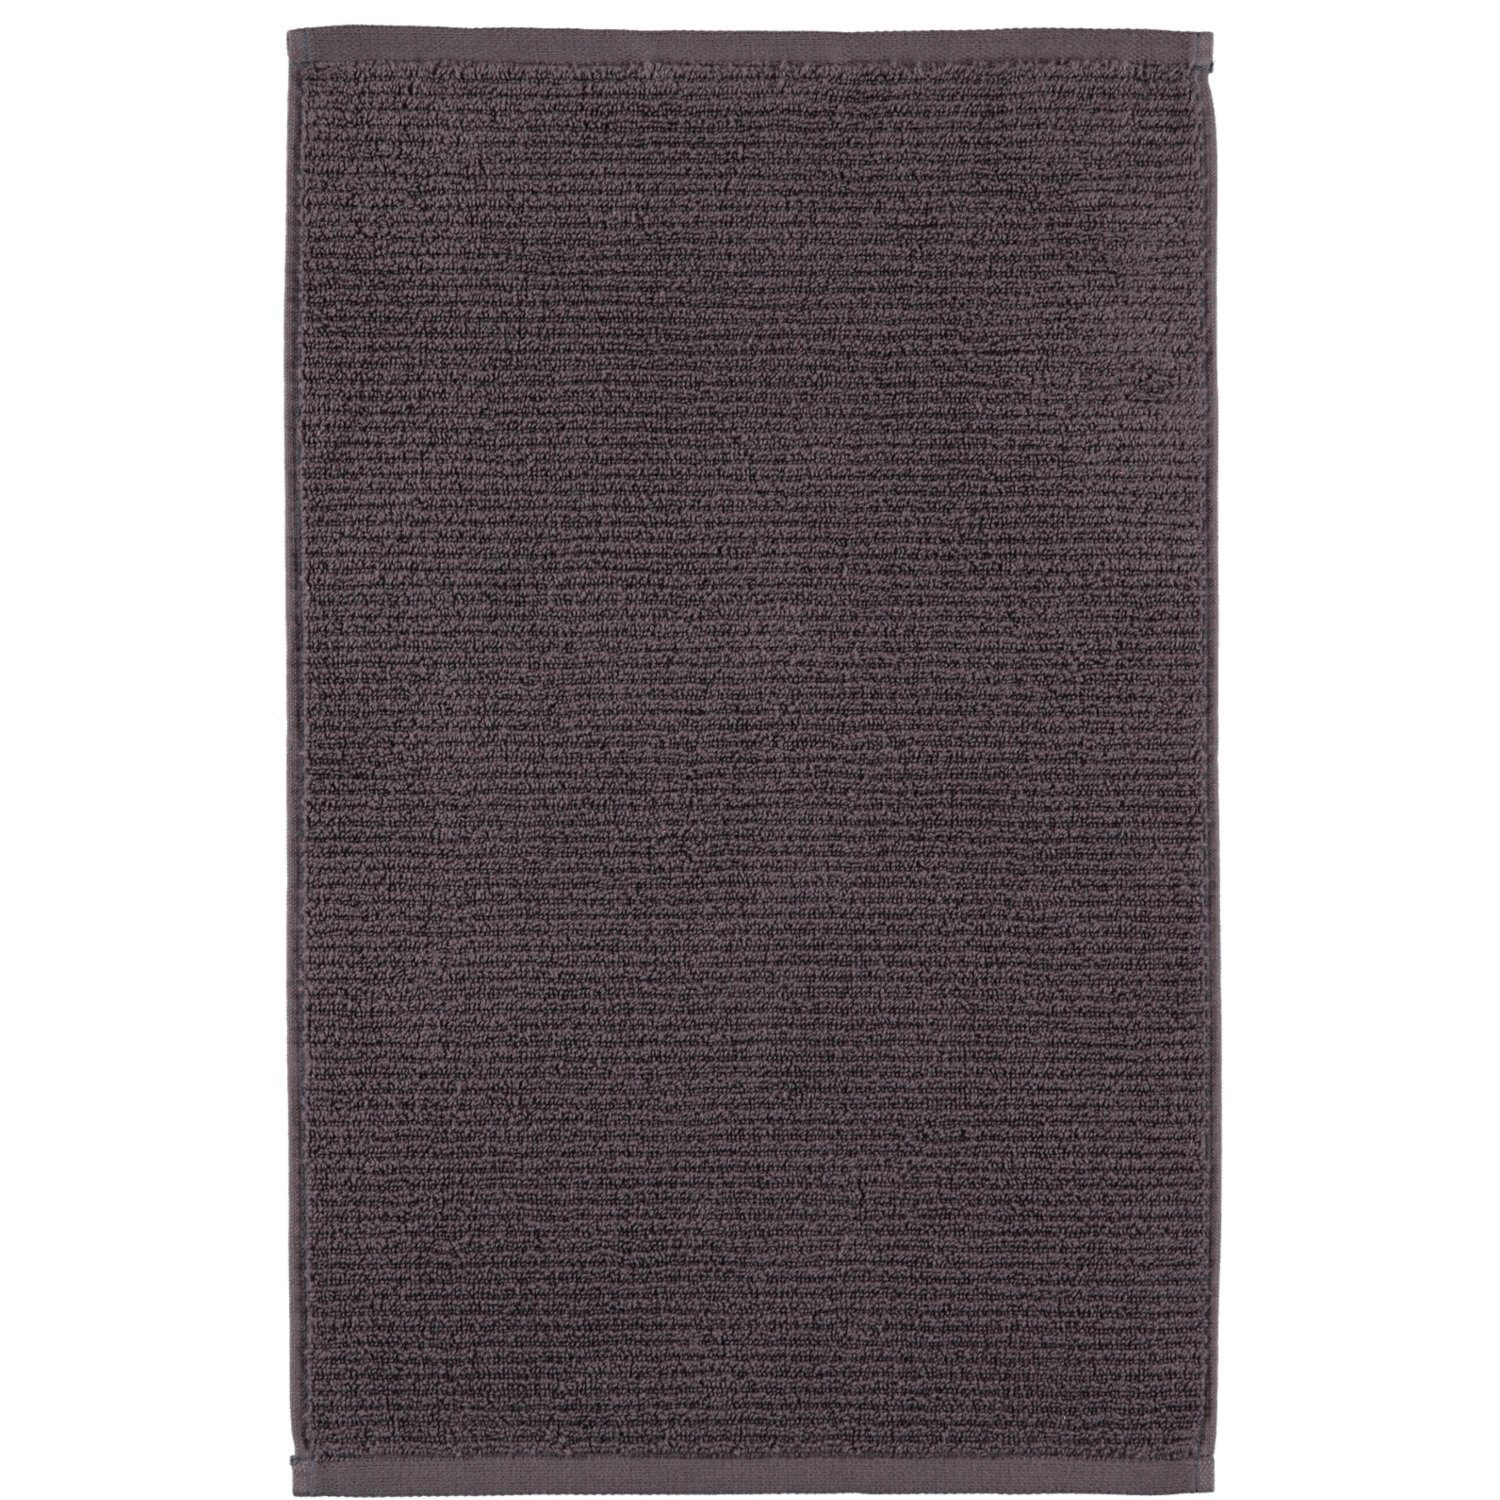 Möve Handtücher Elements, 100% Baumwolle graphite | Alle Handtücher